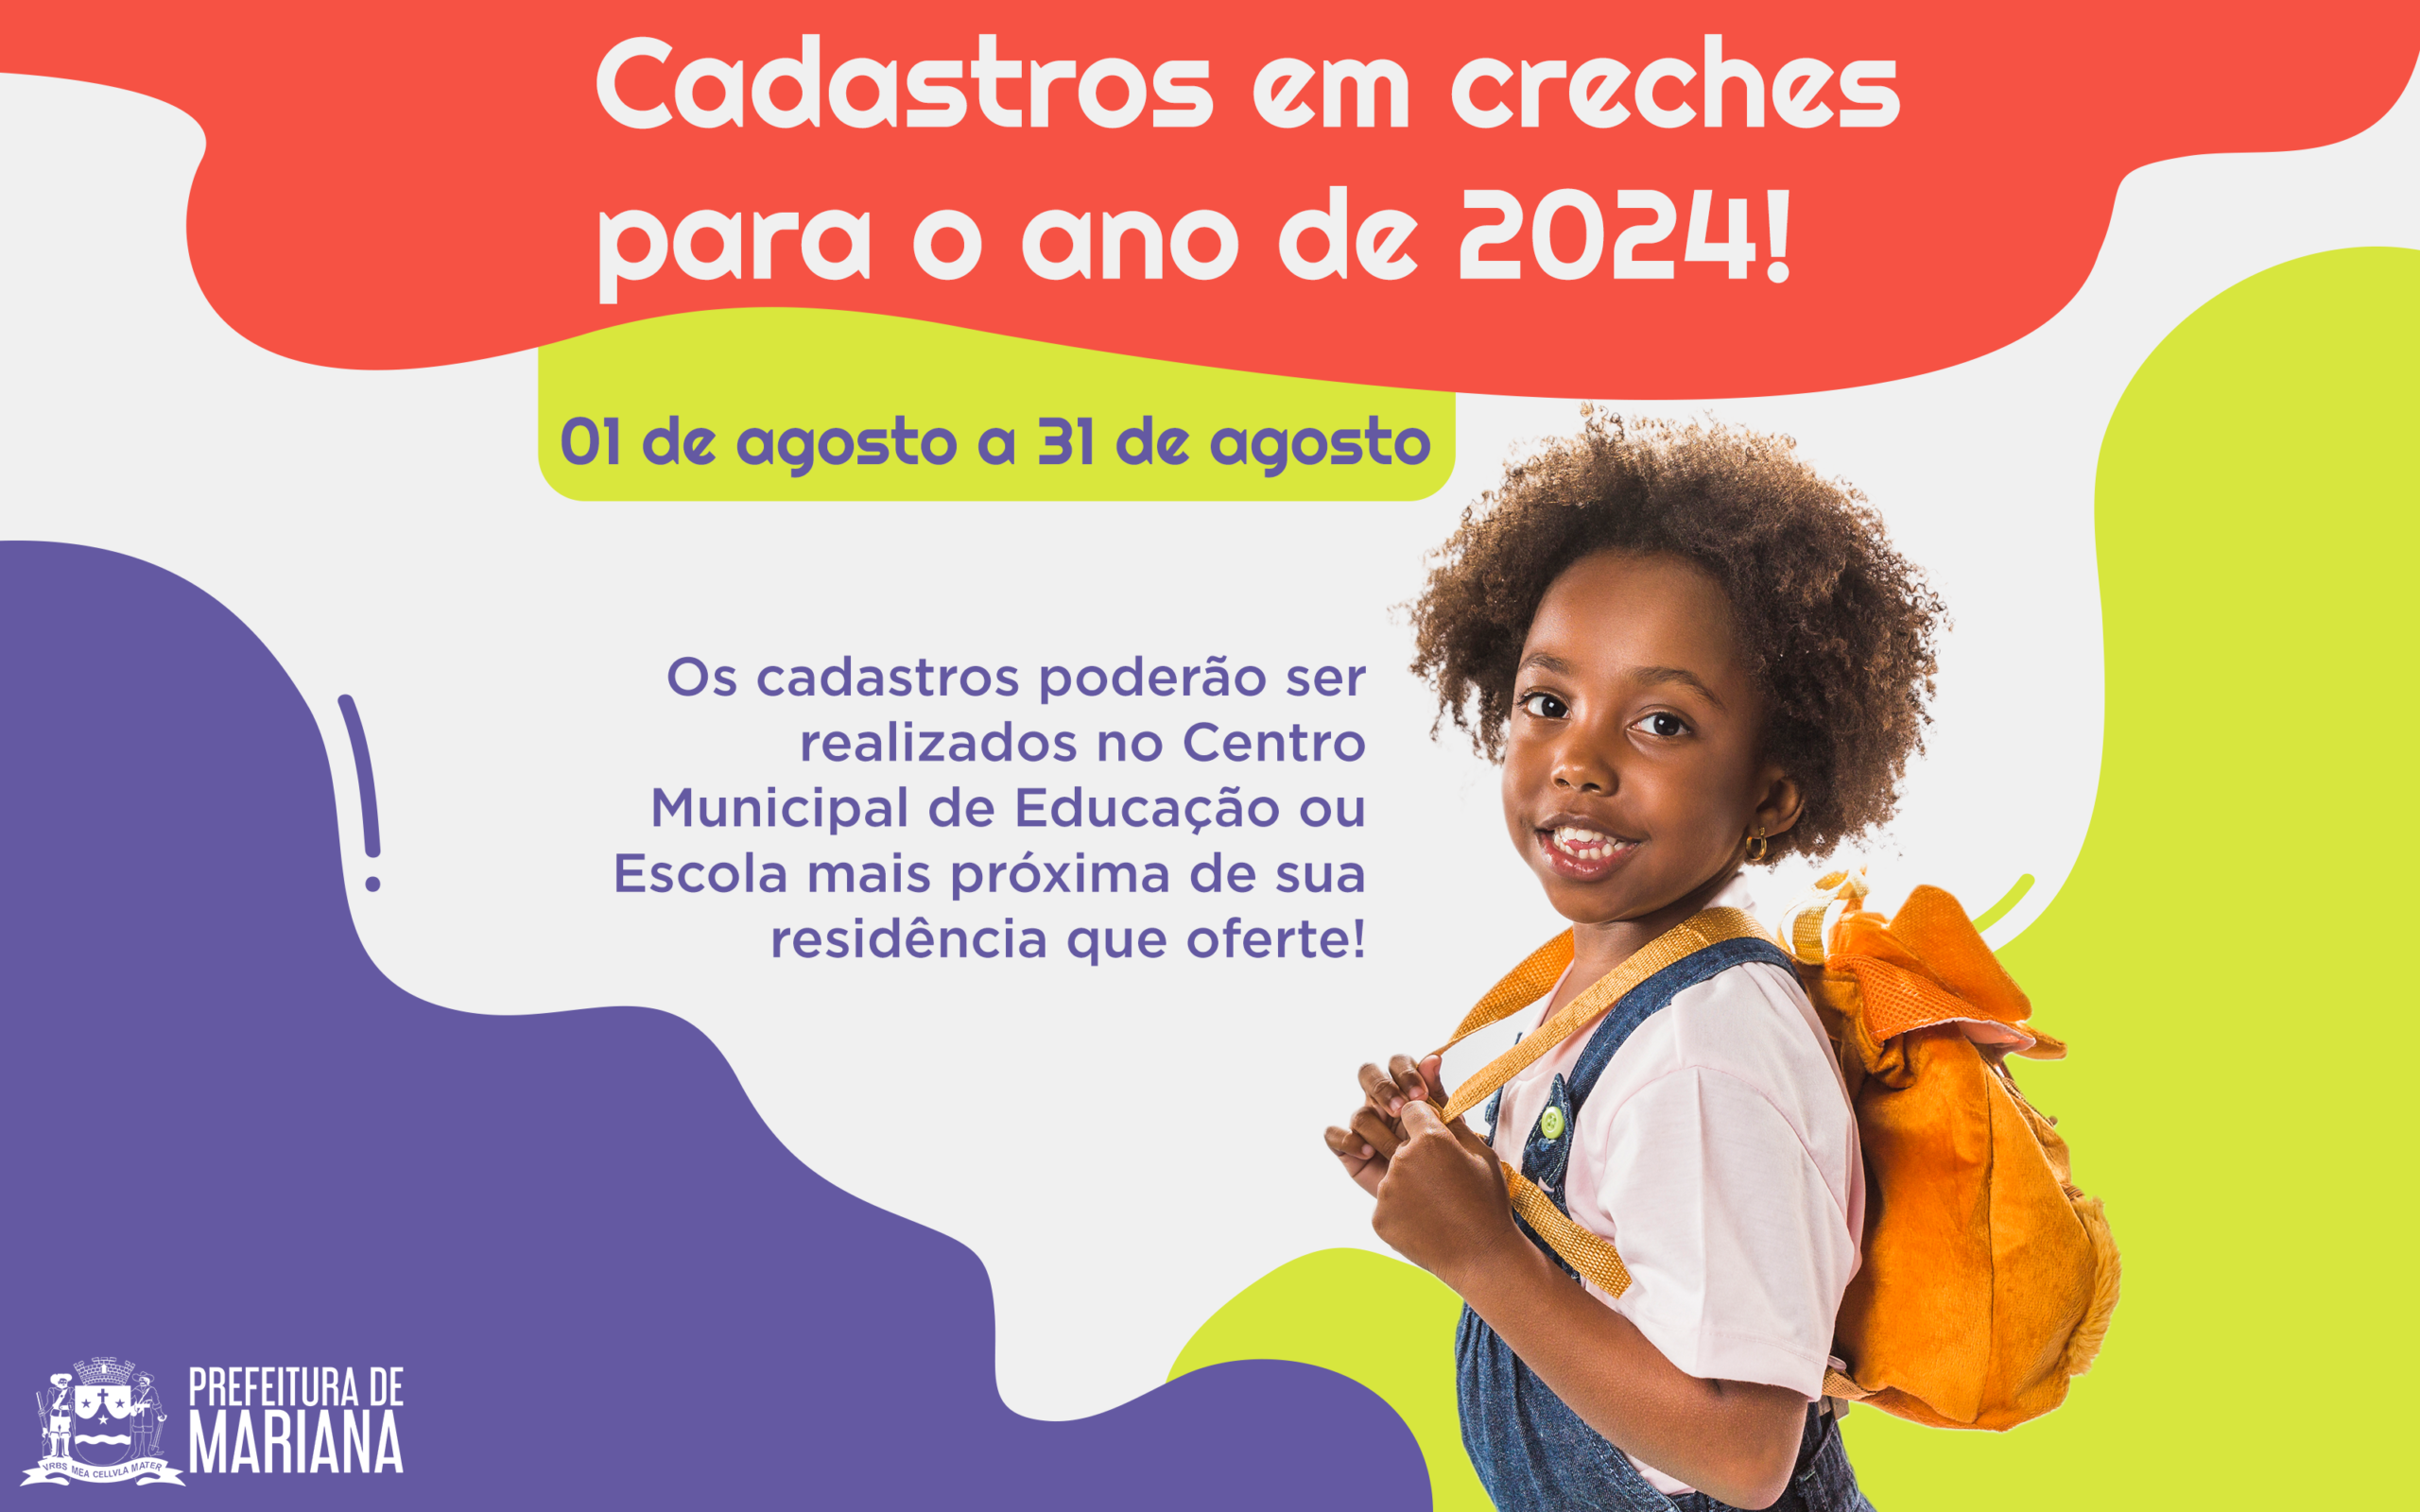 Prefeitura de Mariana inicia em agosto o cadastro para vagas nas Creches Municipais 2024